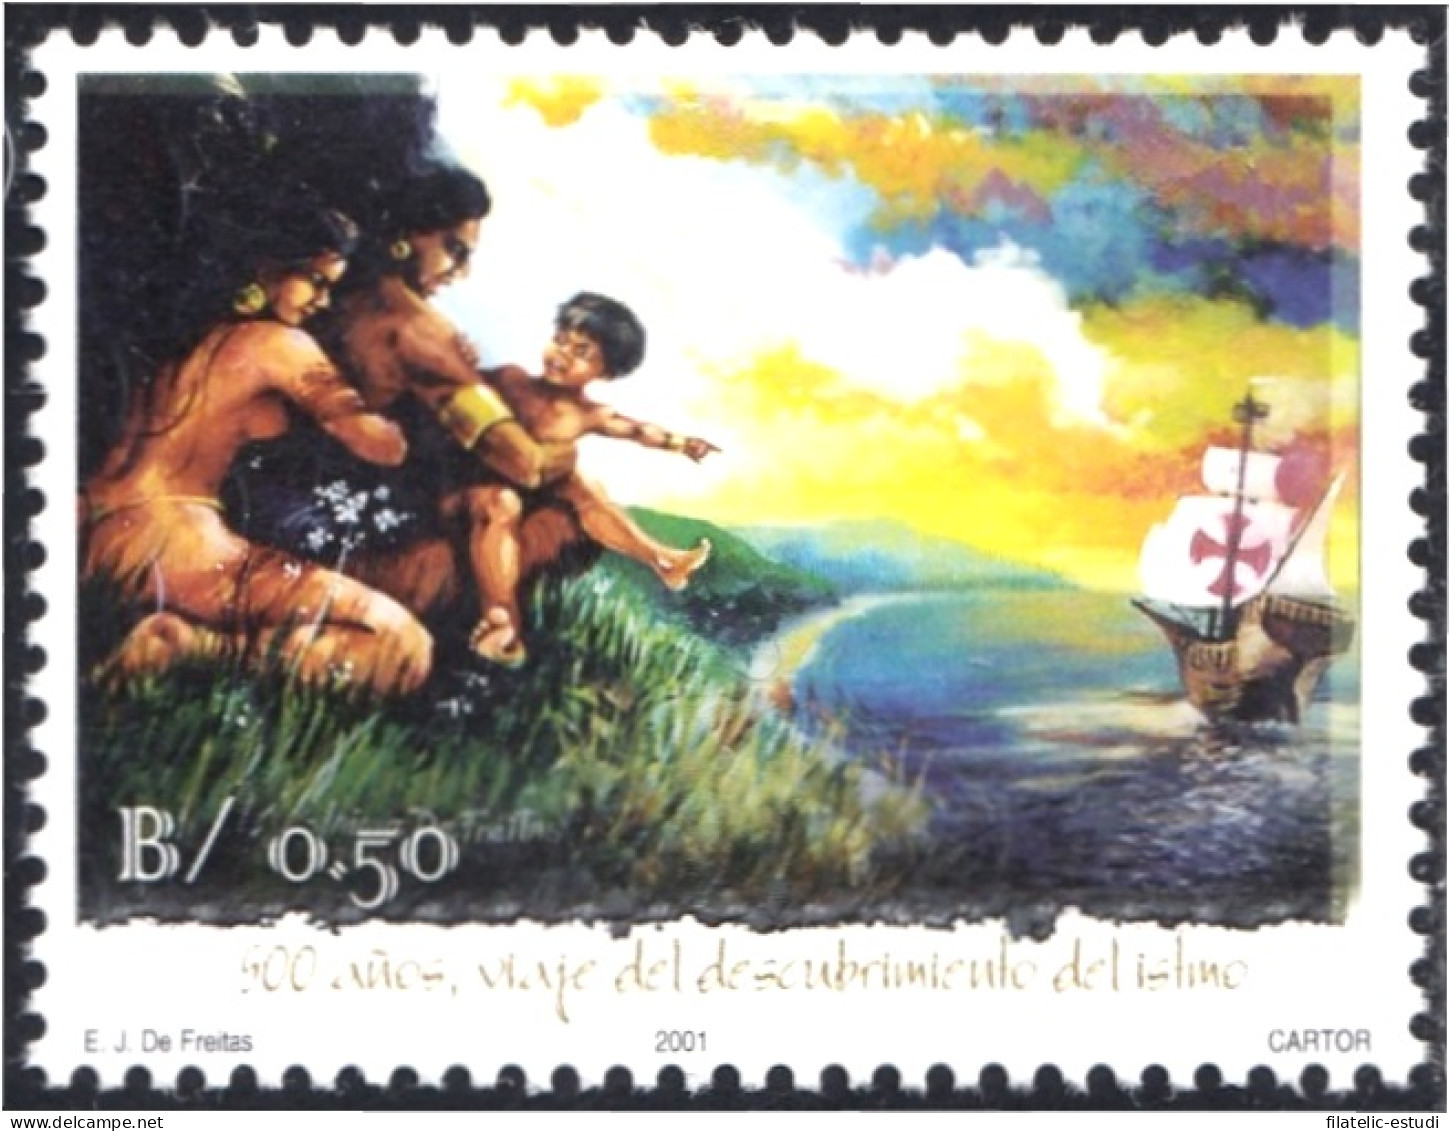 Panama 1207 2001 500 Años Del Viaje Del Descubrimiento Del Istmo MNH - Panama